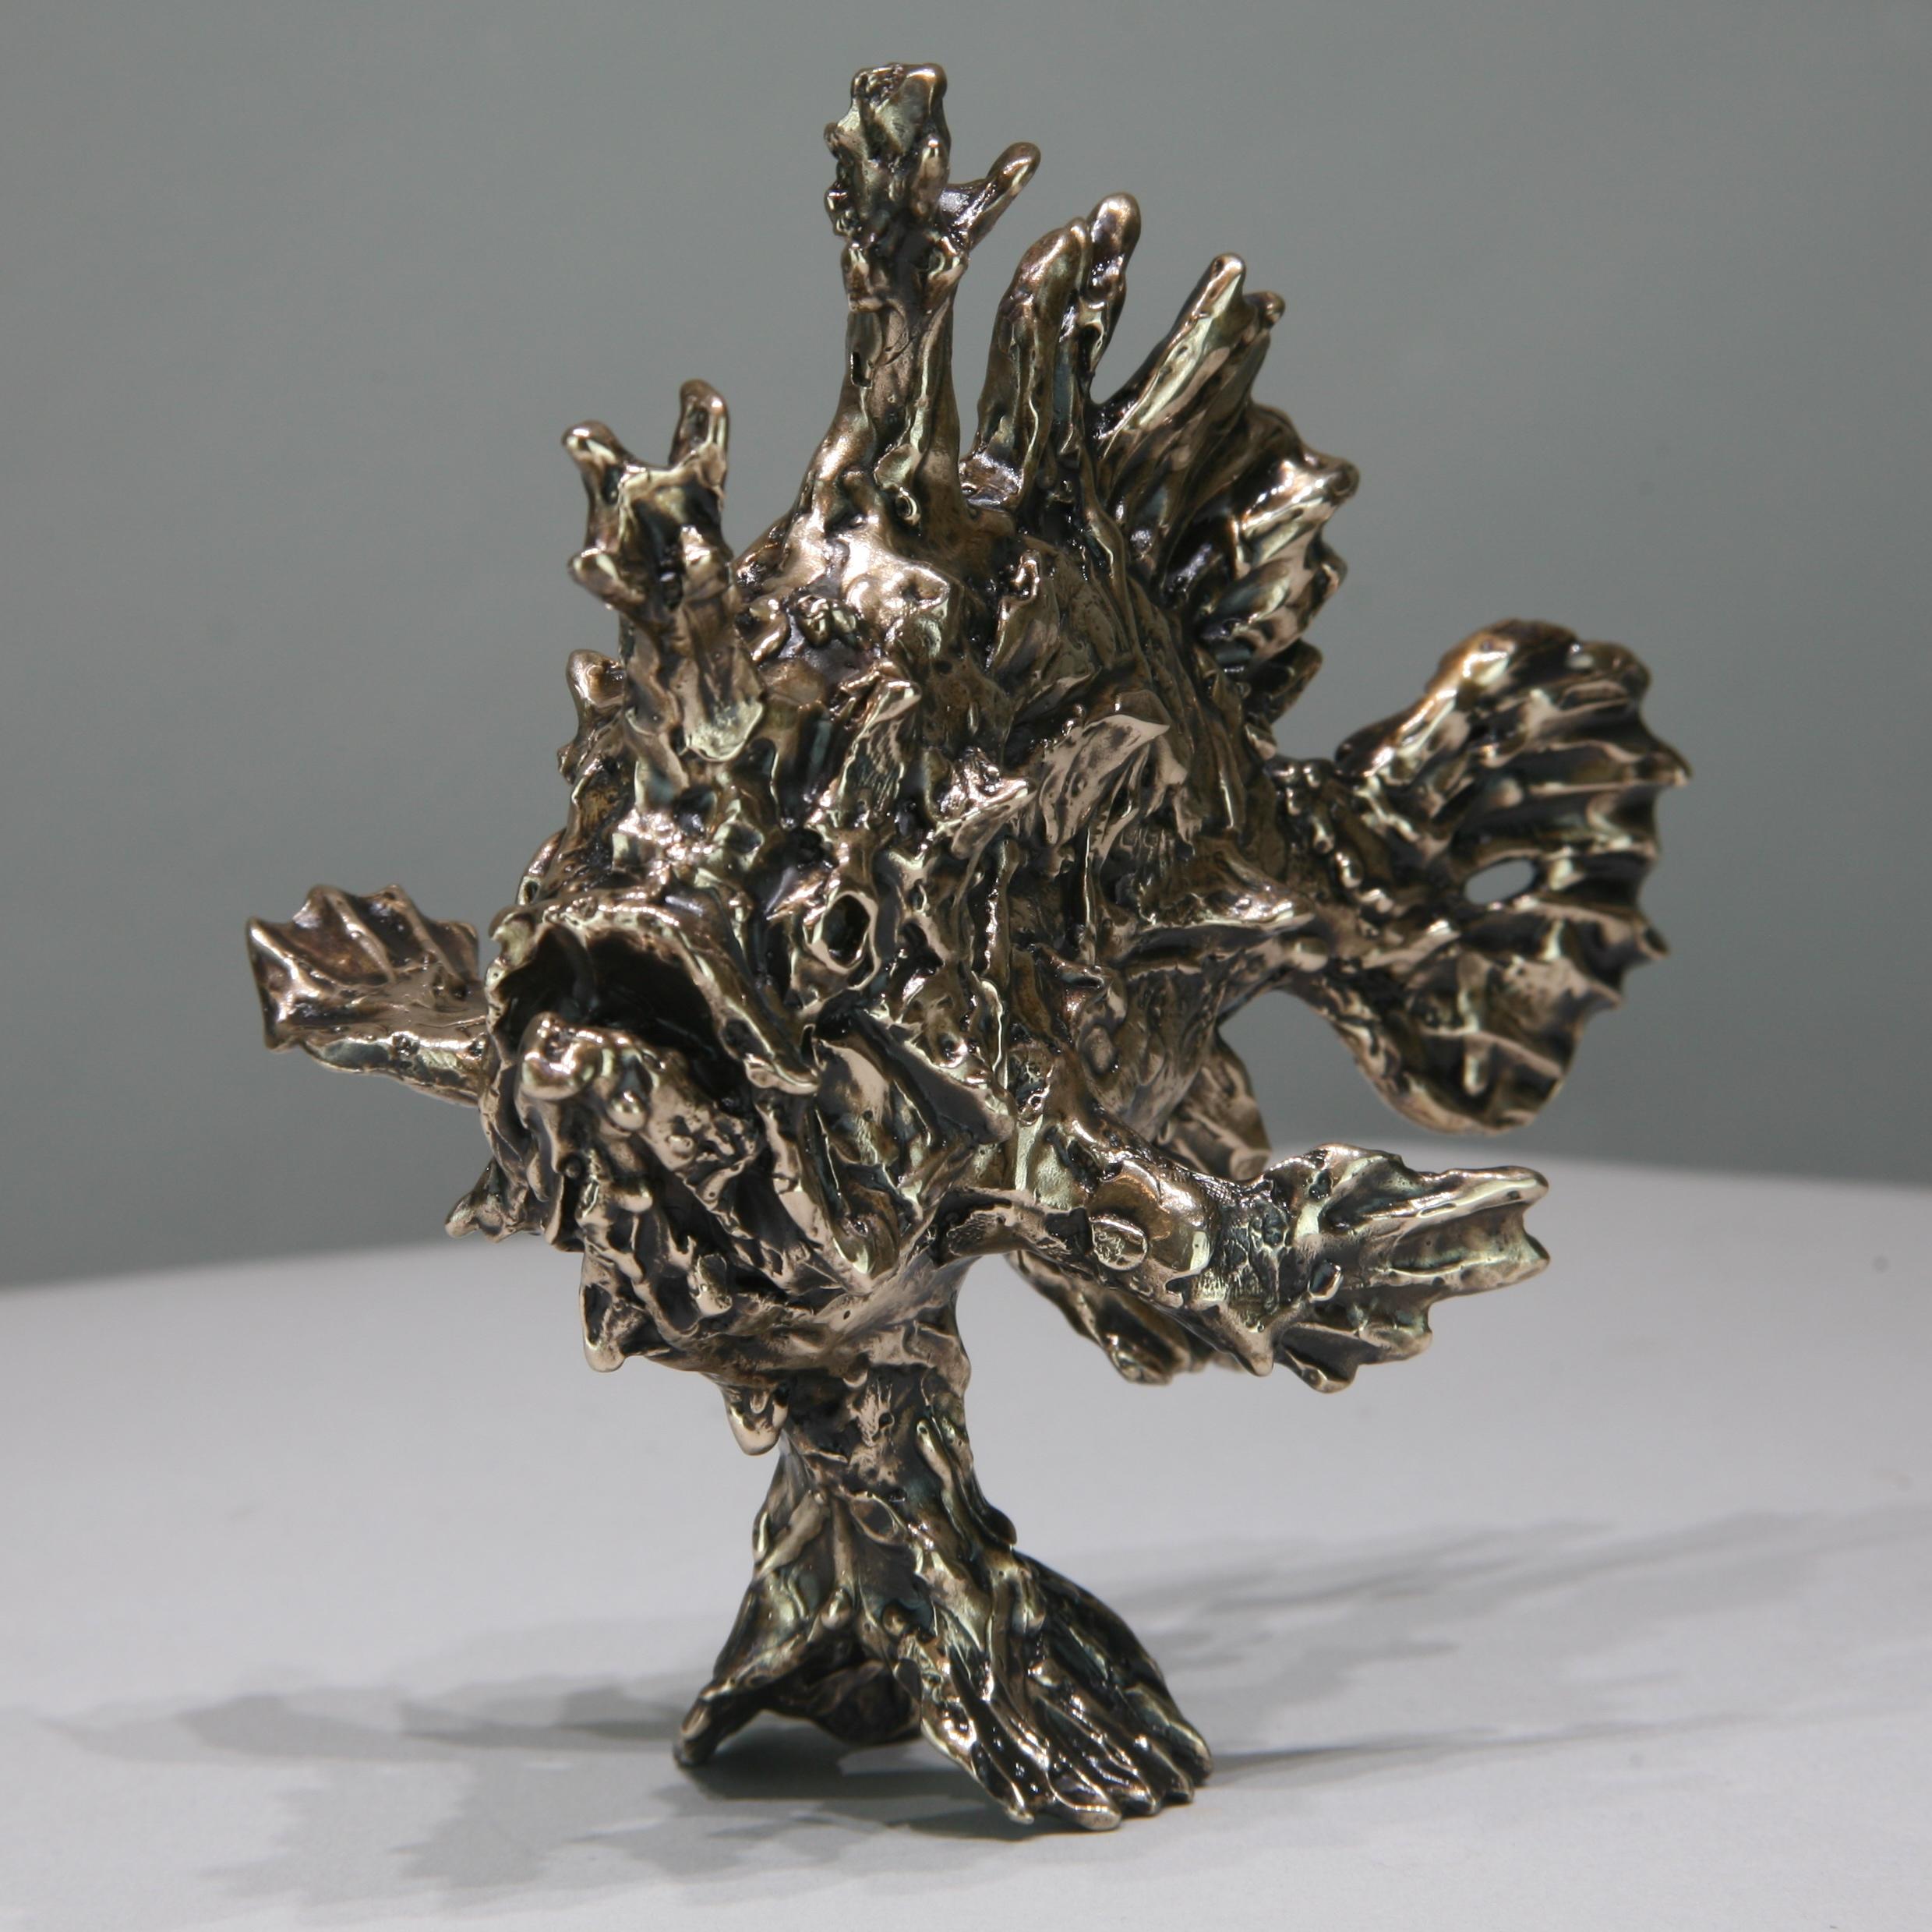 Sargassum Fish-original bronze wildlife- sculpture-artwork-contemporary art - Abstract Impressionist Sculpture by Andrzej Szymczyk